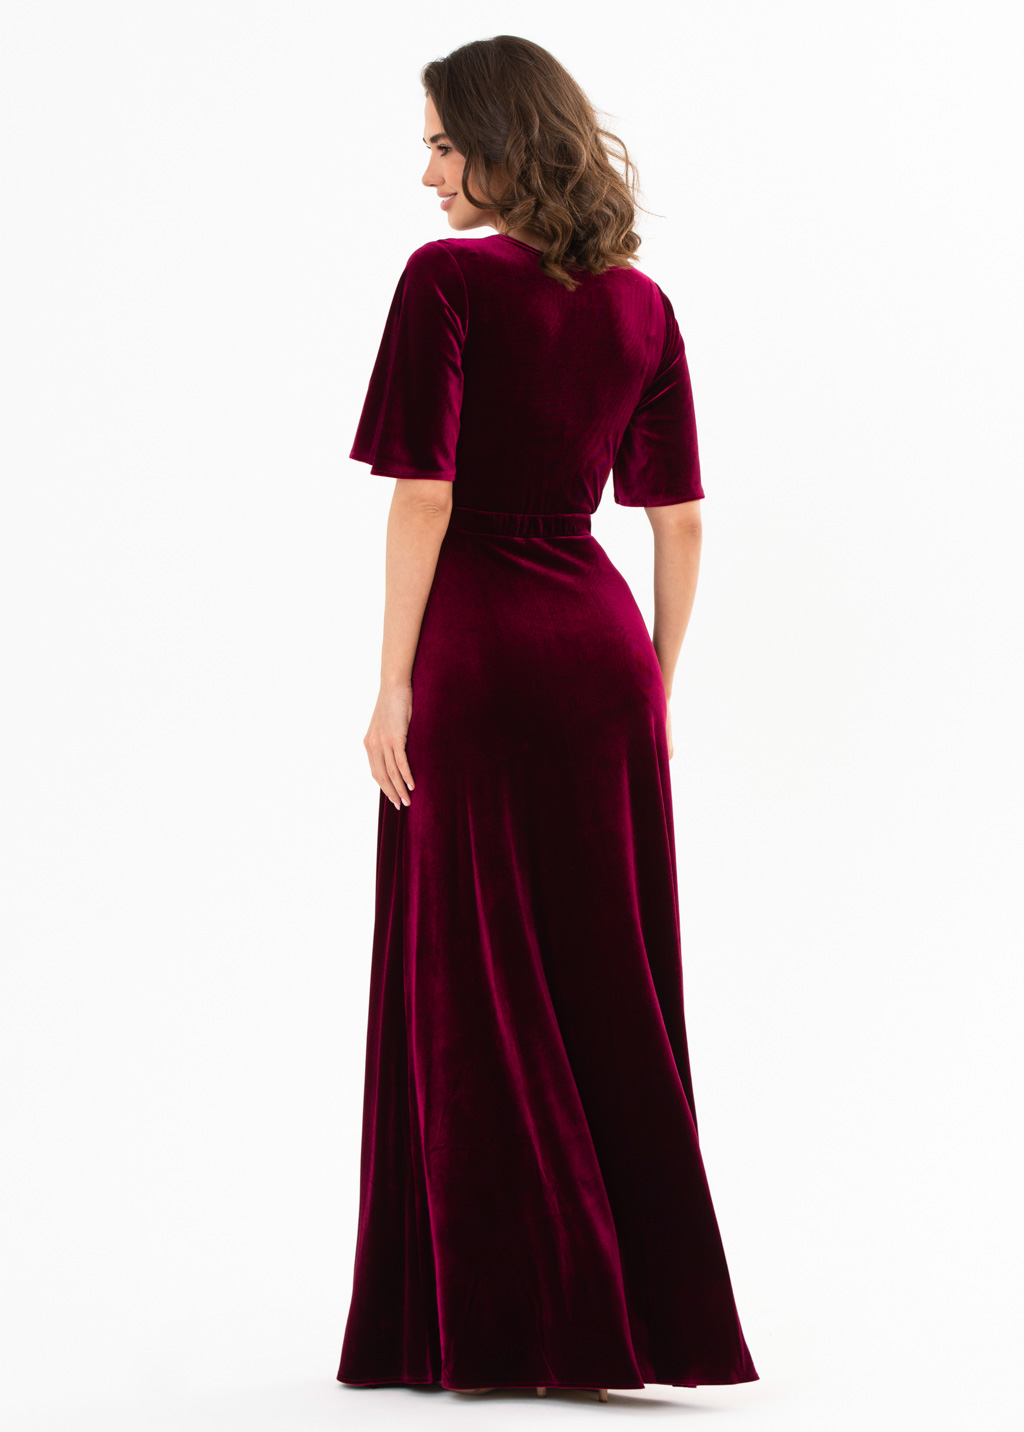 Plum burgundy velvet long dress